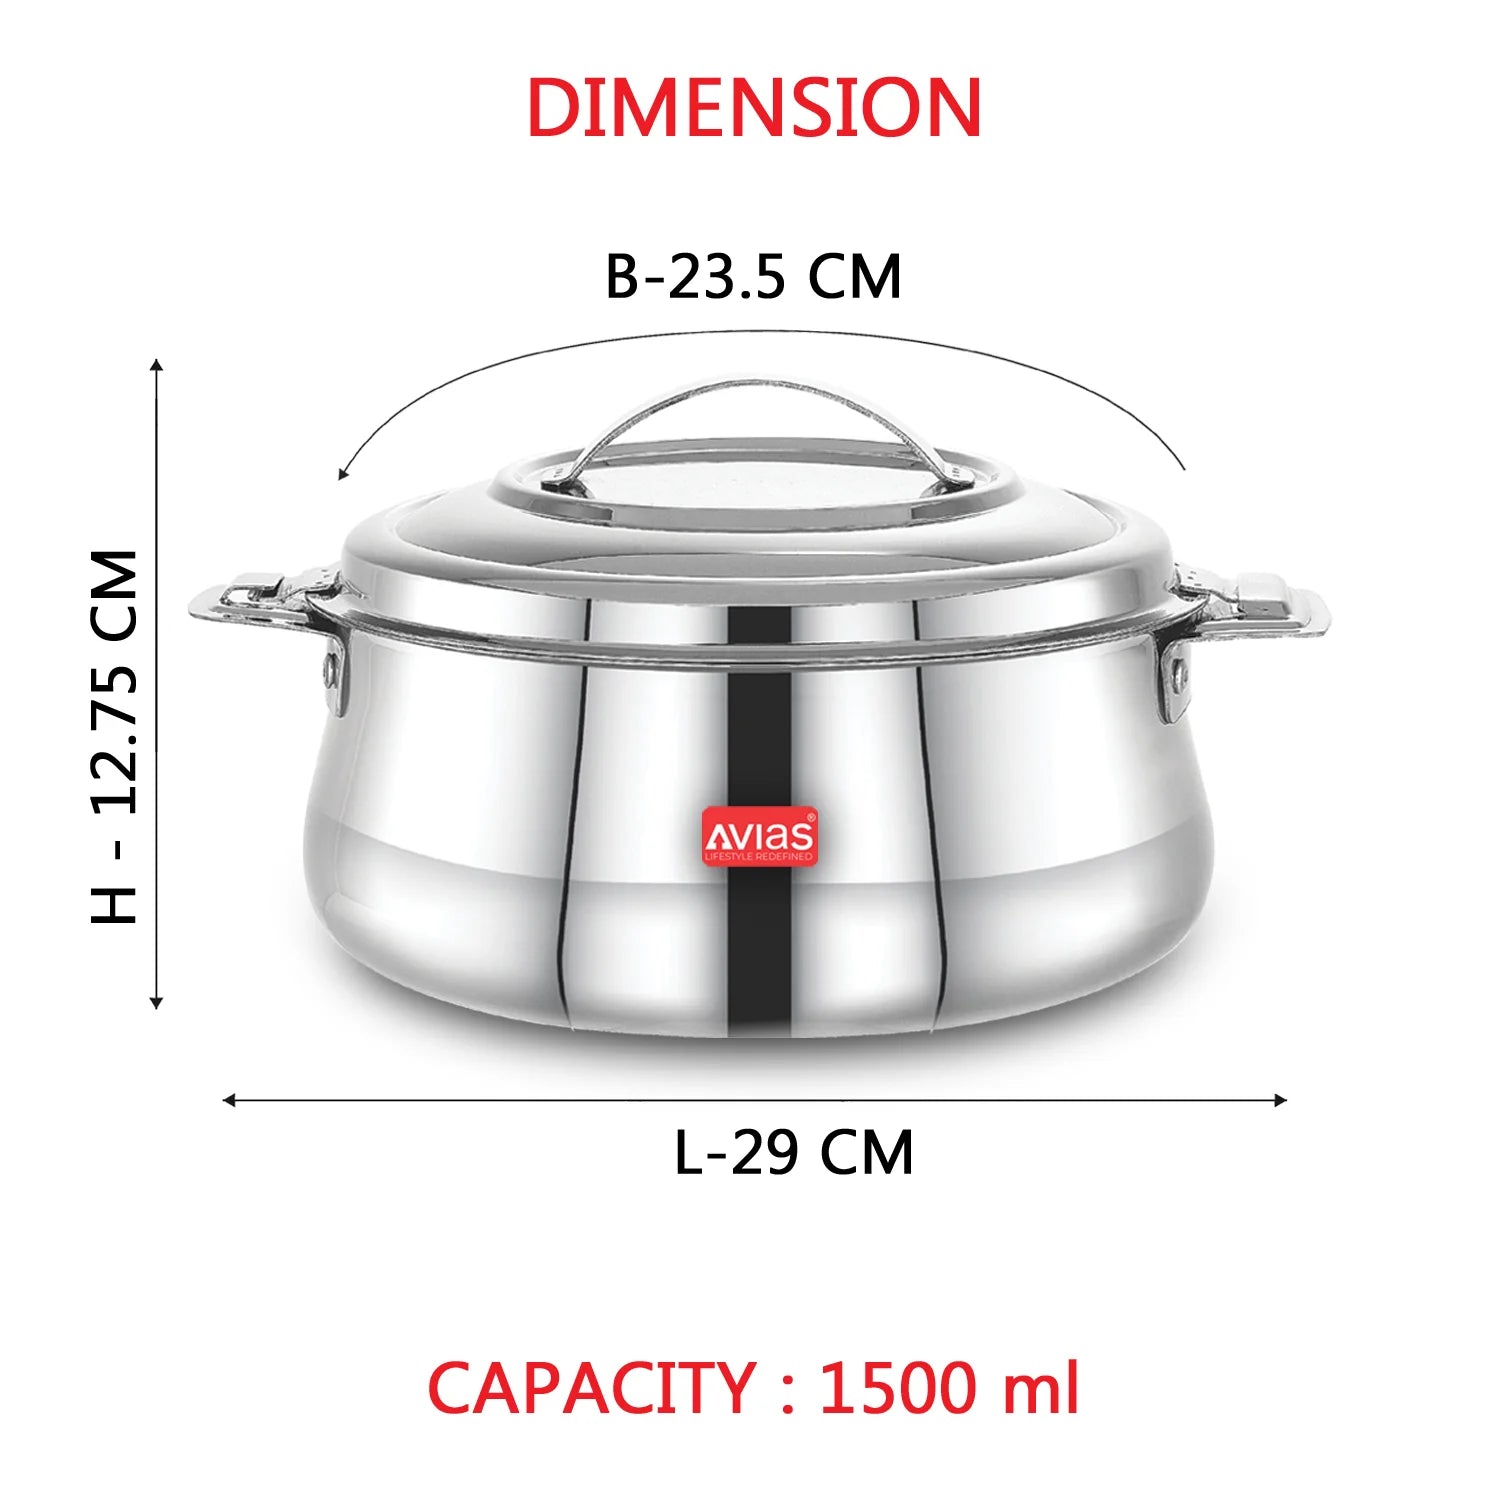 Riara Silver Premium Stainless steel casserole-1500ml